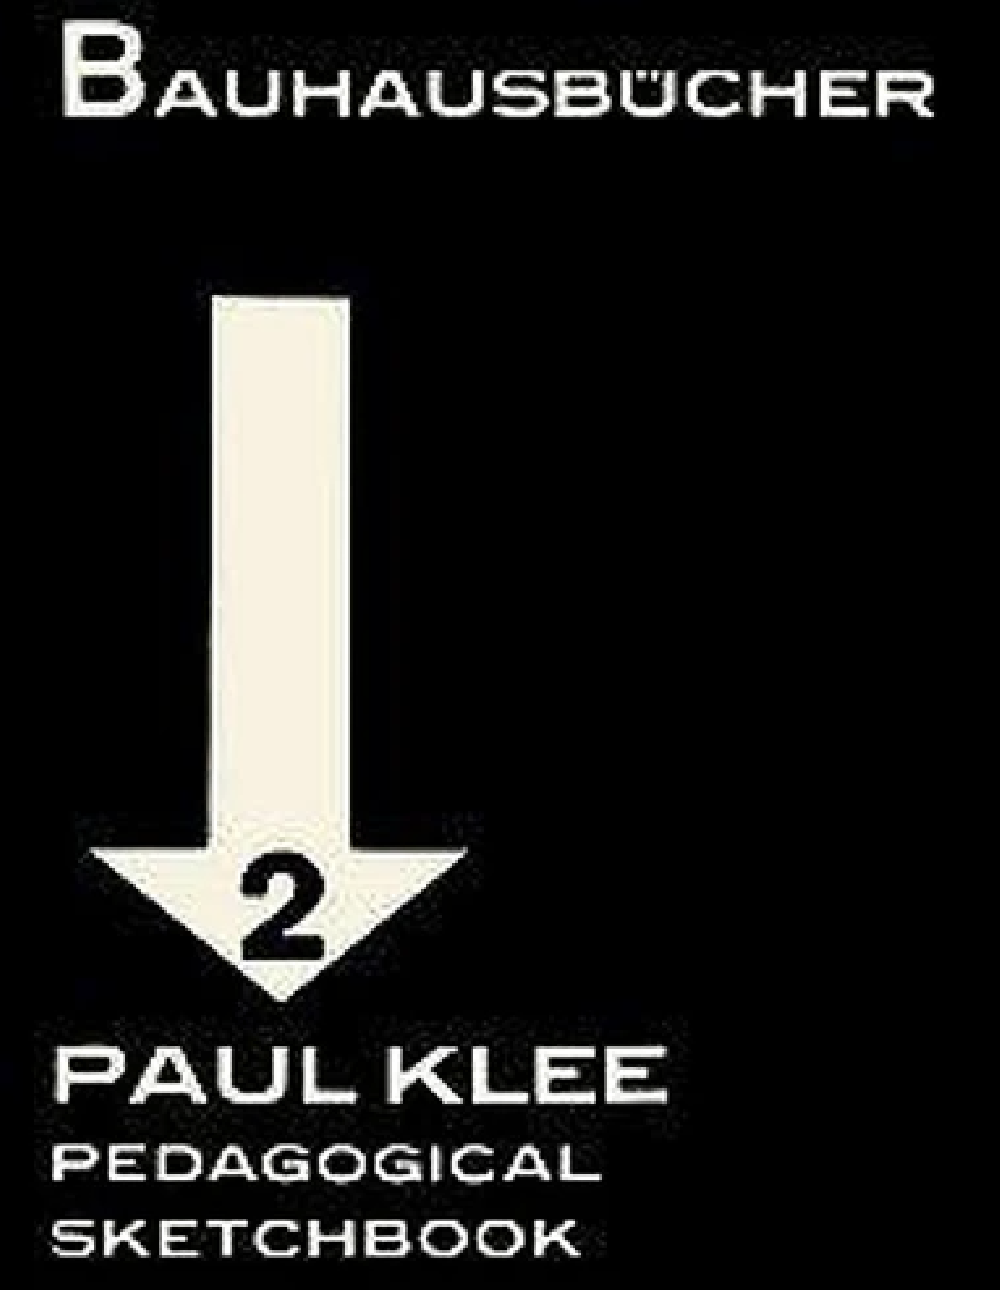 Bauhausbucher 2 - Paul Klee pedagogical sketchbook